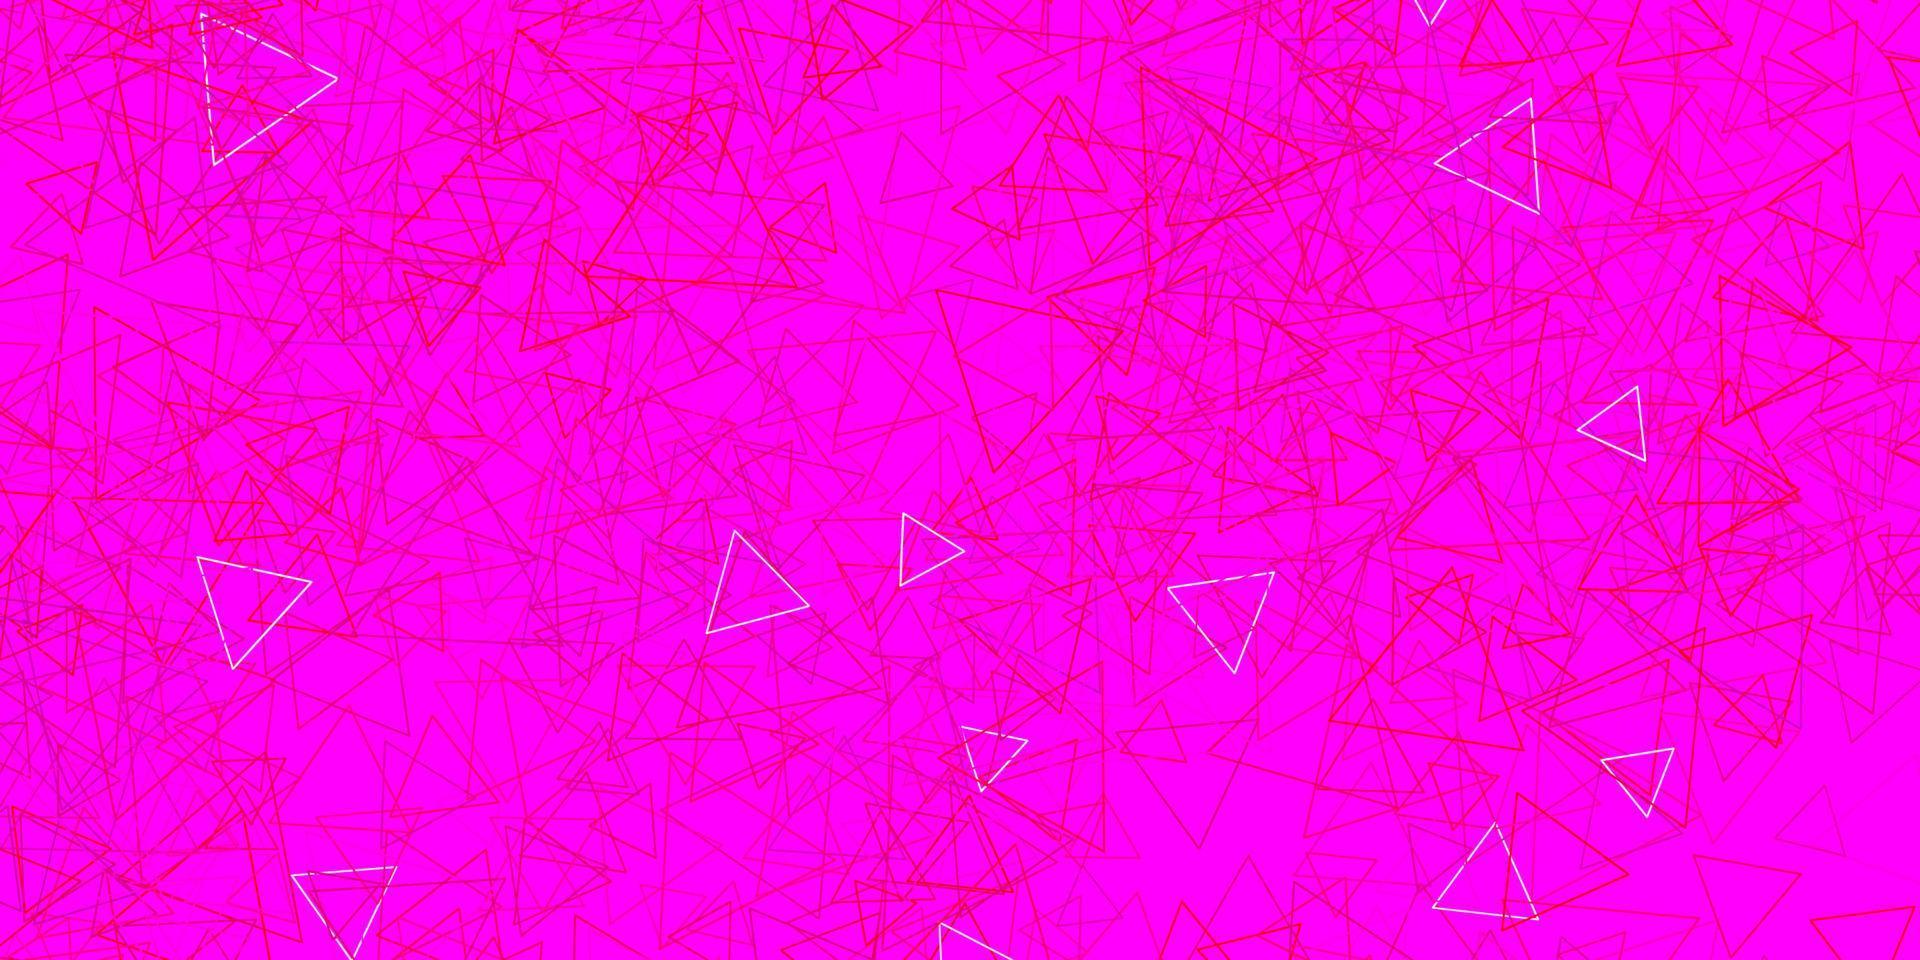 fond de vecteur rose foncé avec des triangles.